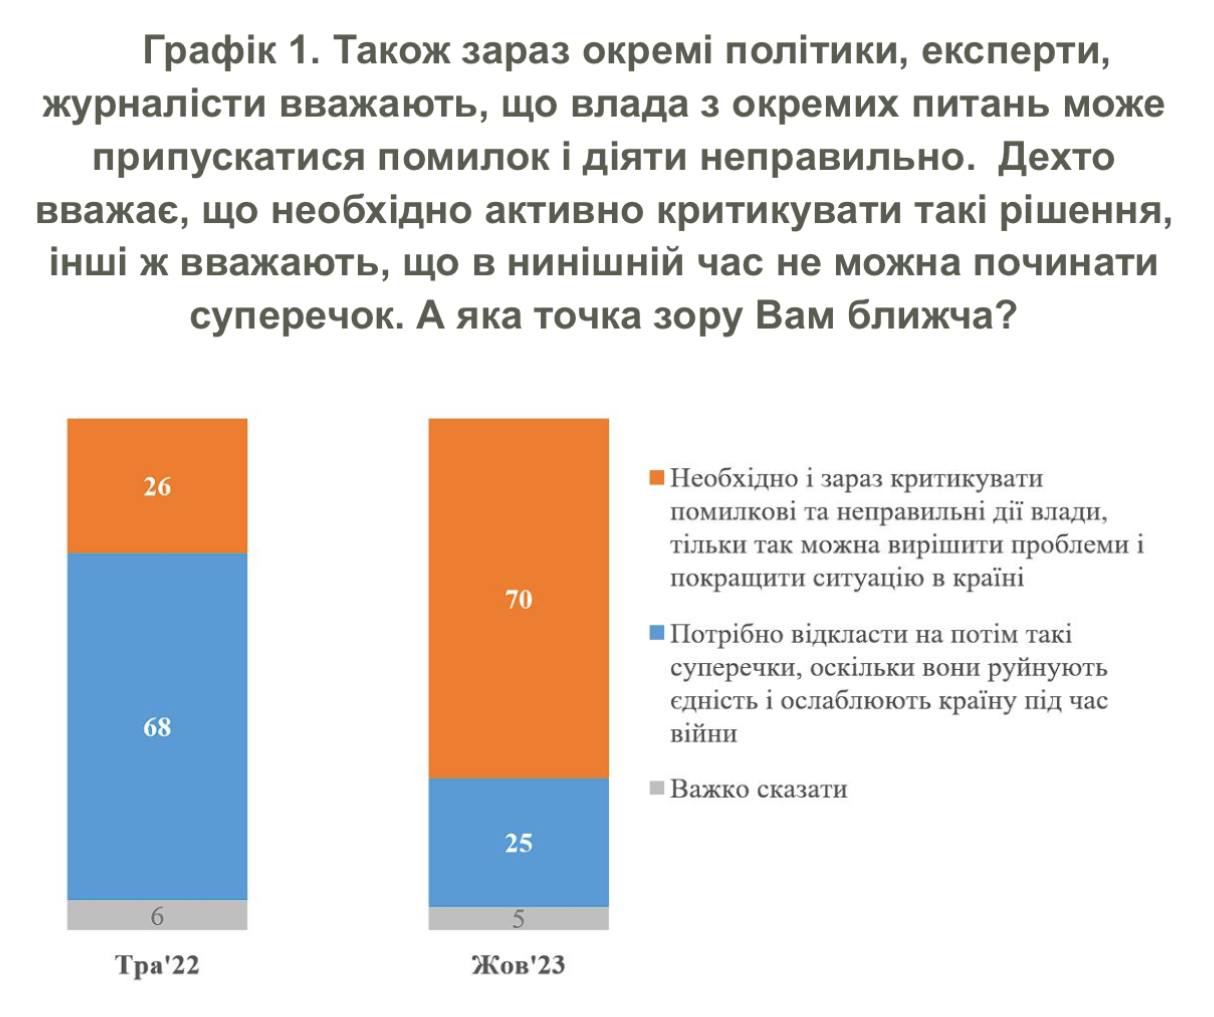 70% украинцев считают, что власть нужно критиковать